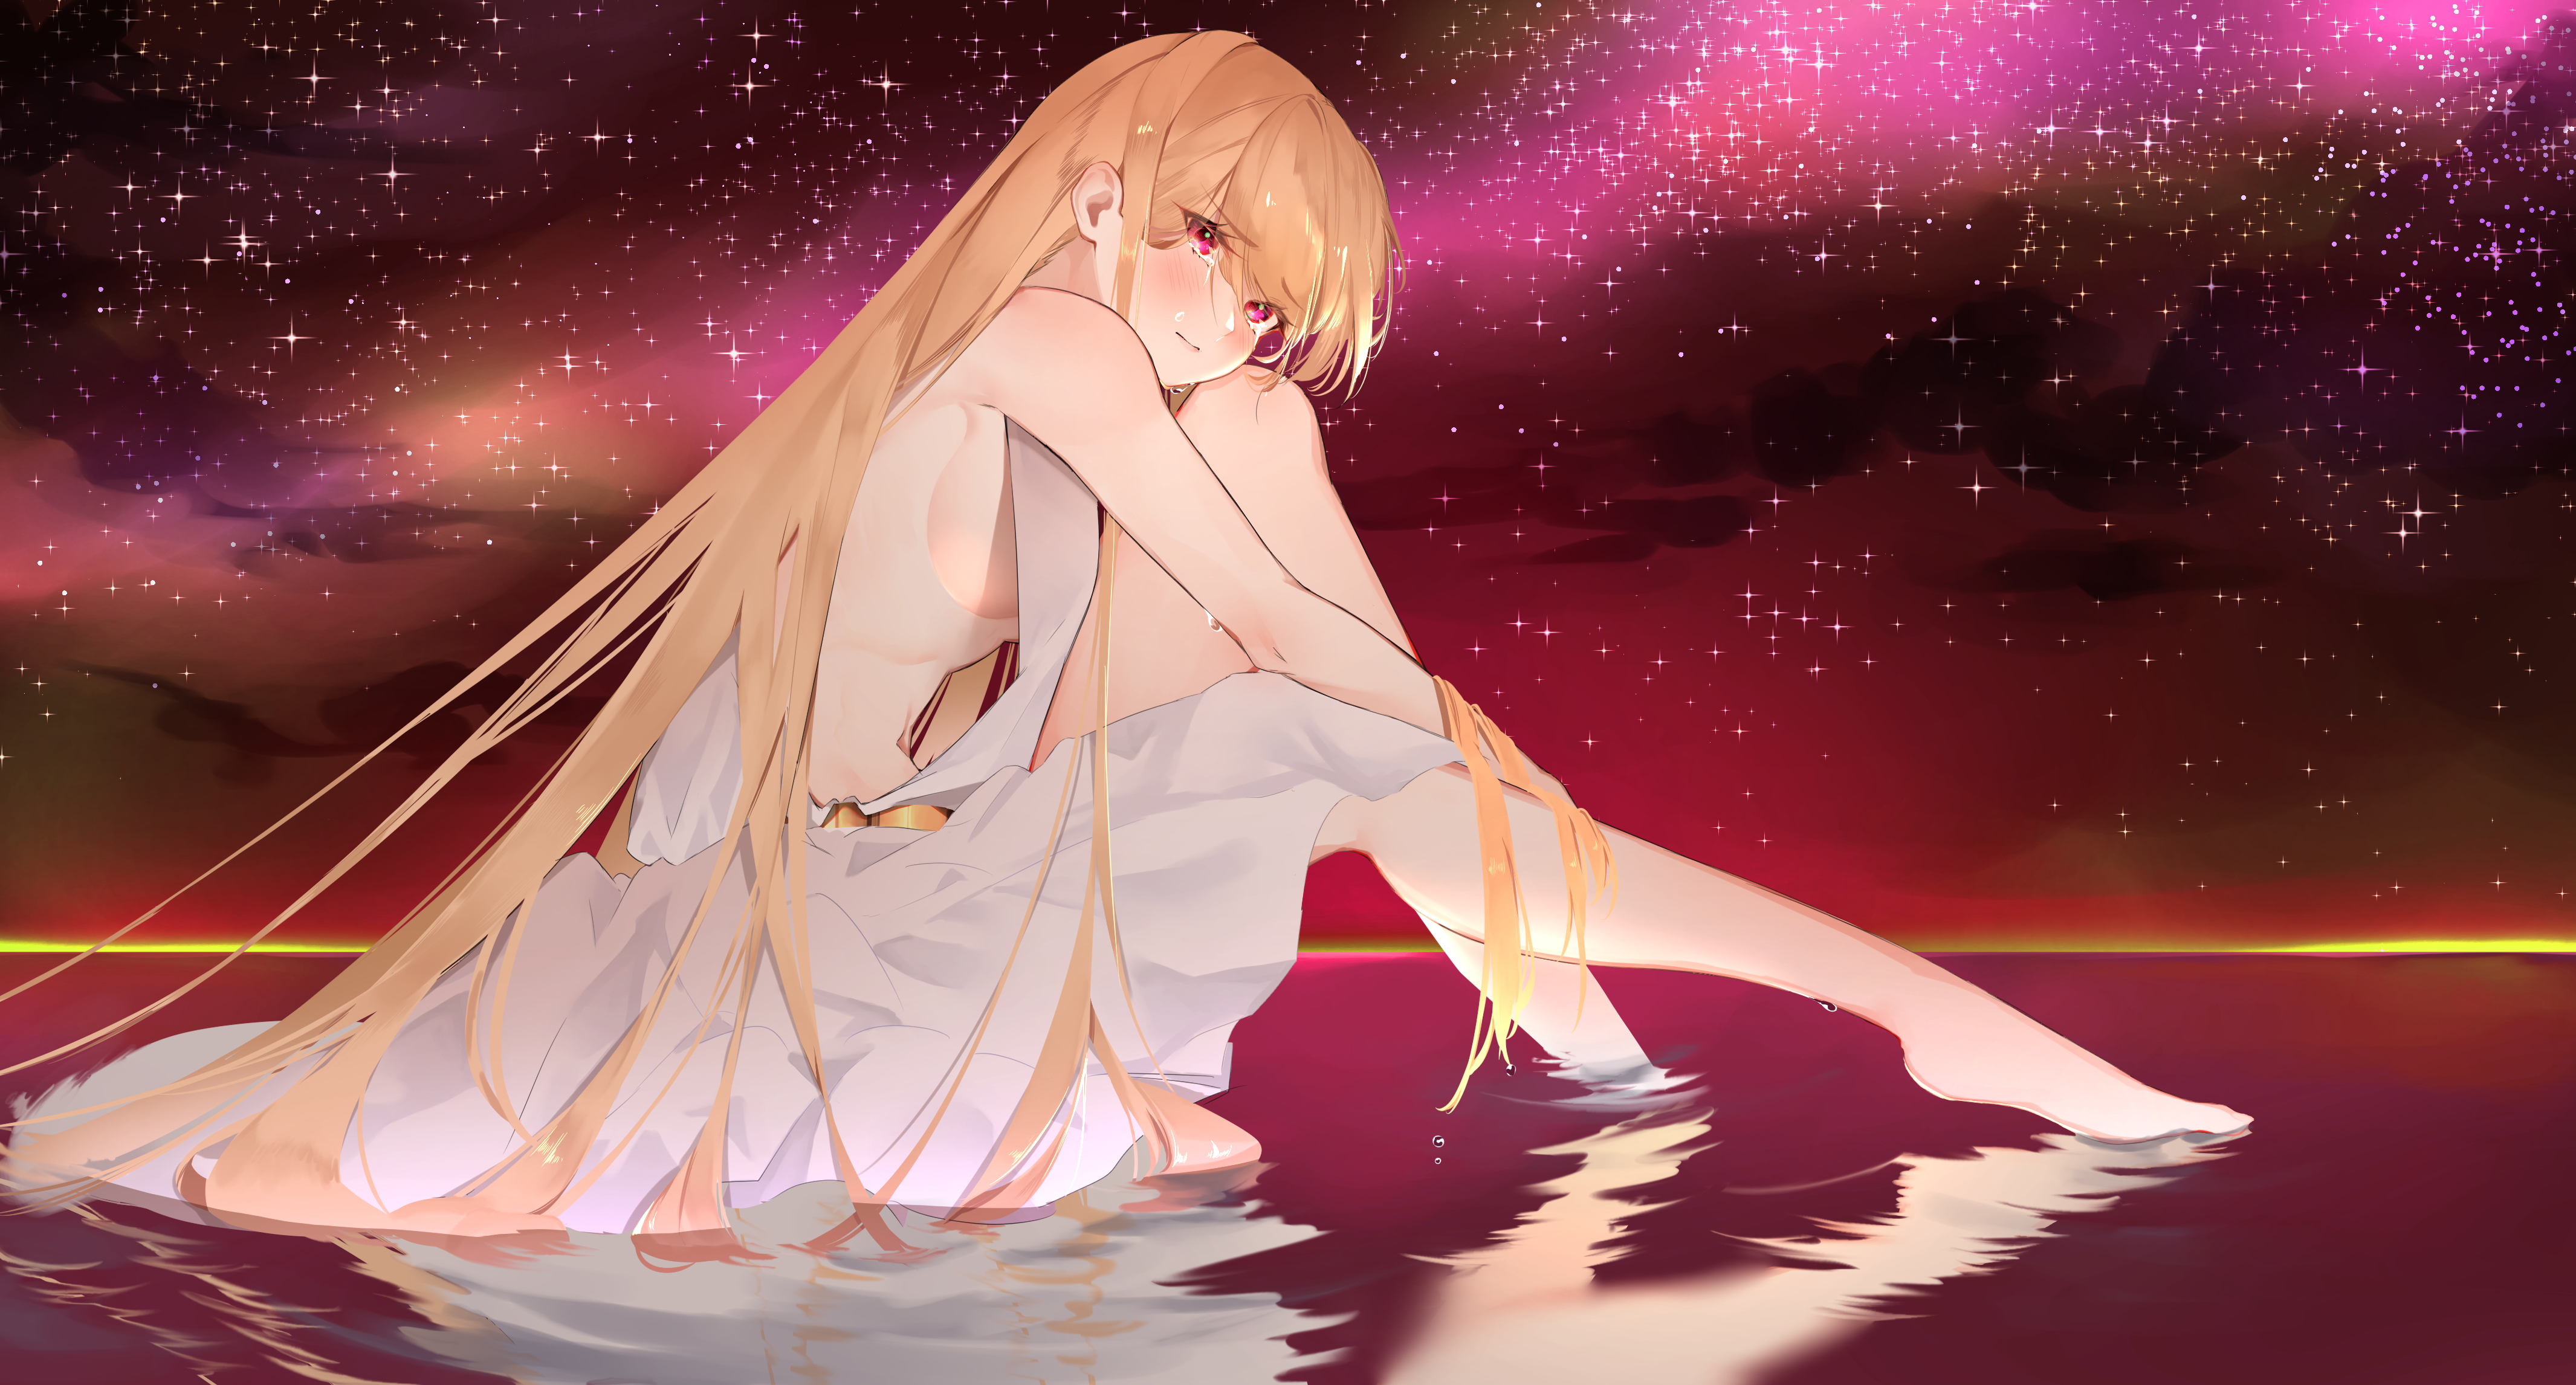 Anime 4262x2292 blonde sky night horizon white dress sideboob holding knees red eyes barefoot anime girls Yuya